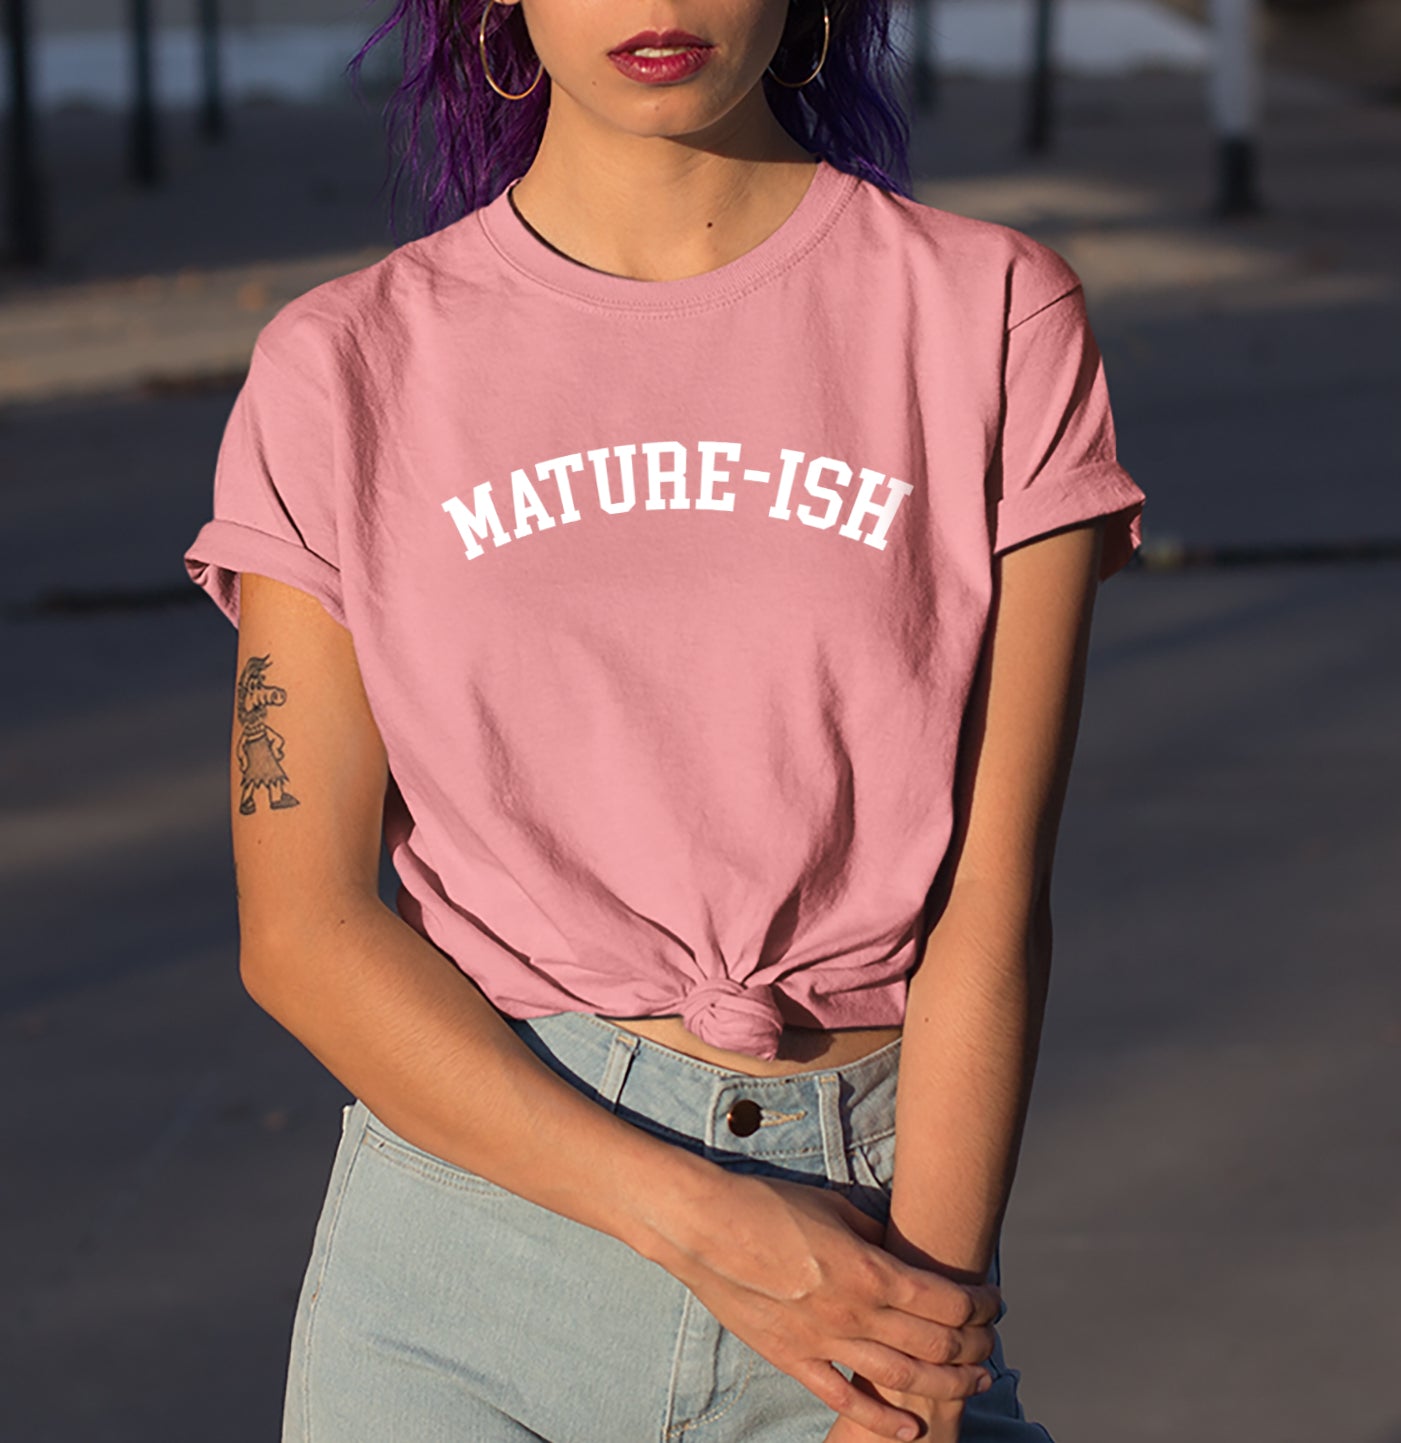 Mature-Ish Shirt - HighCiti